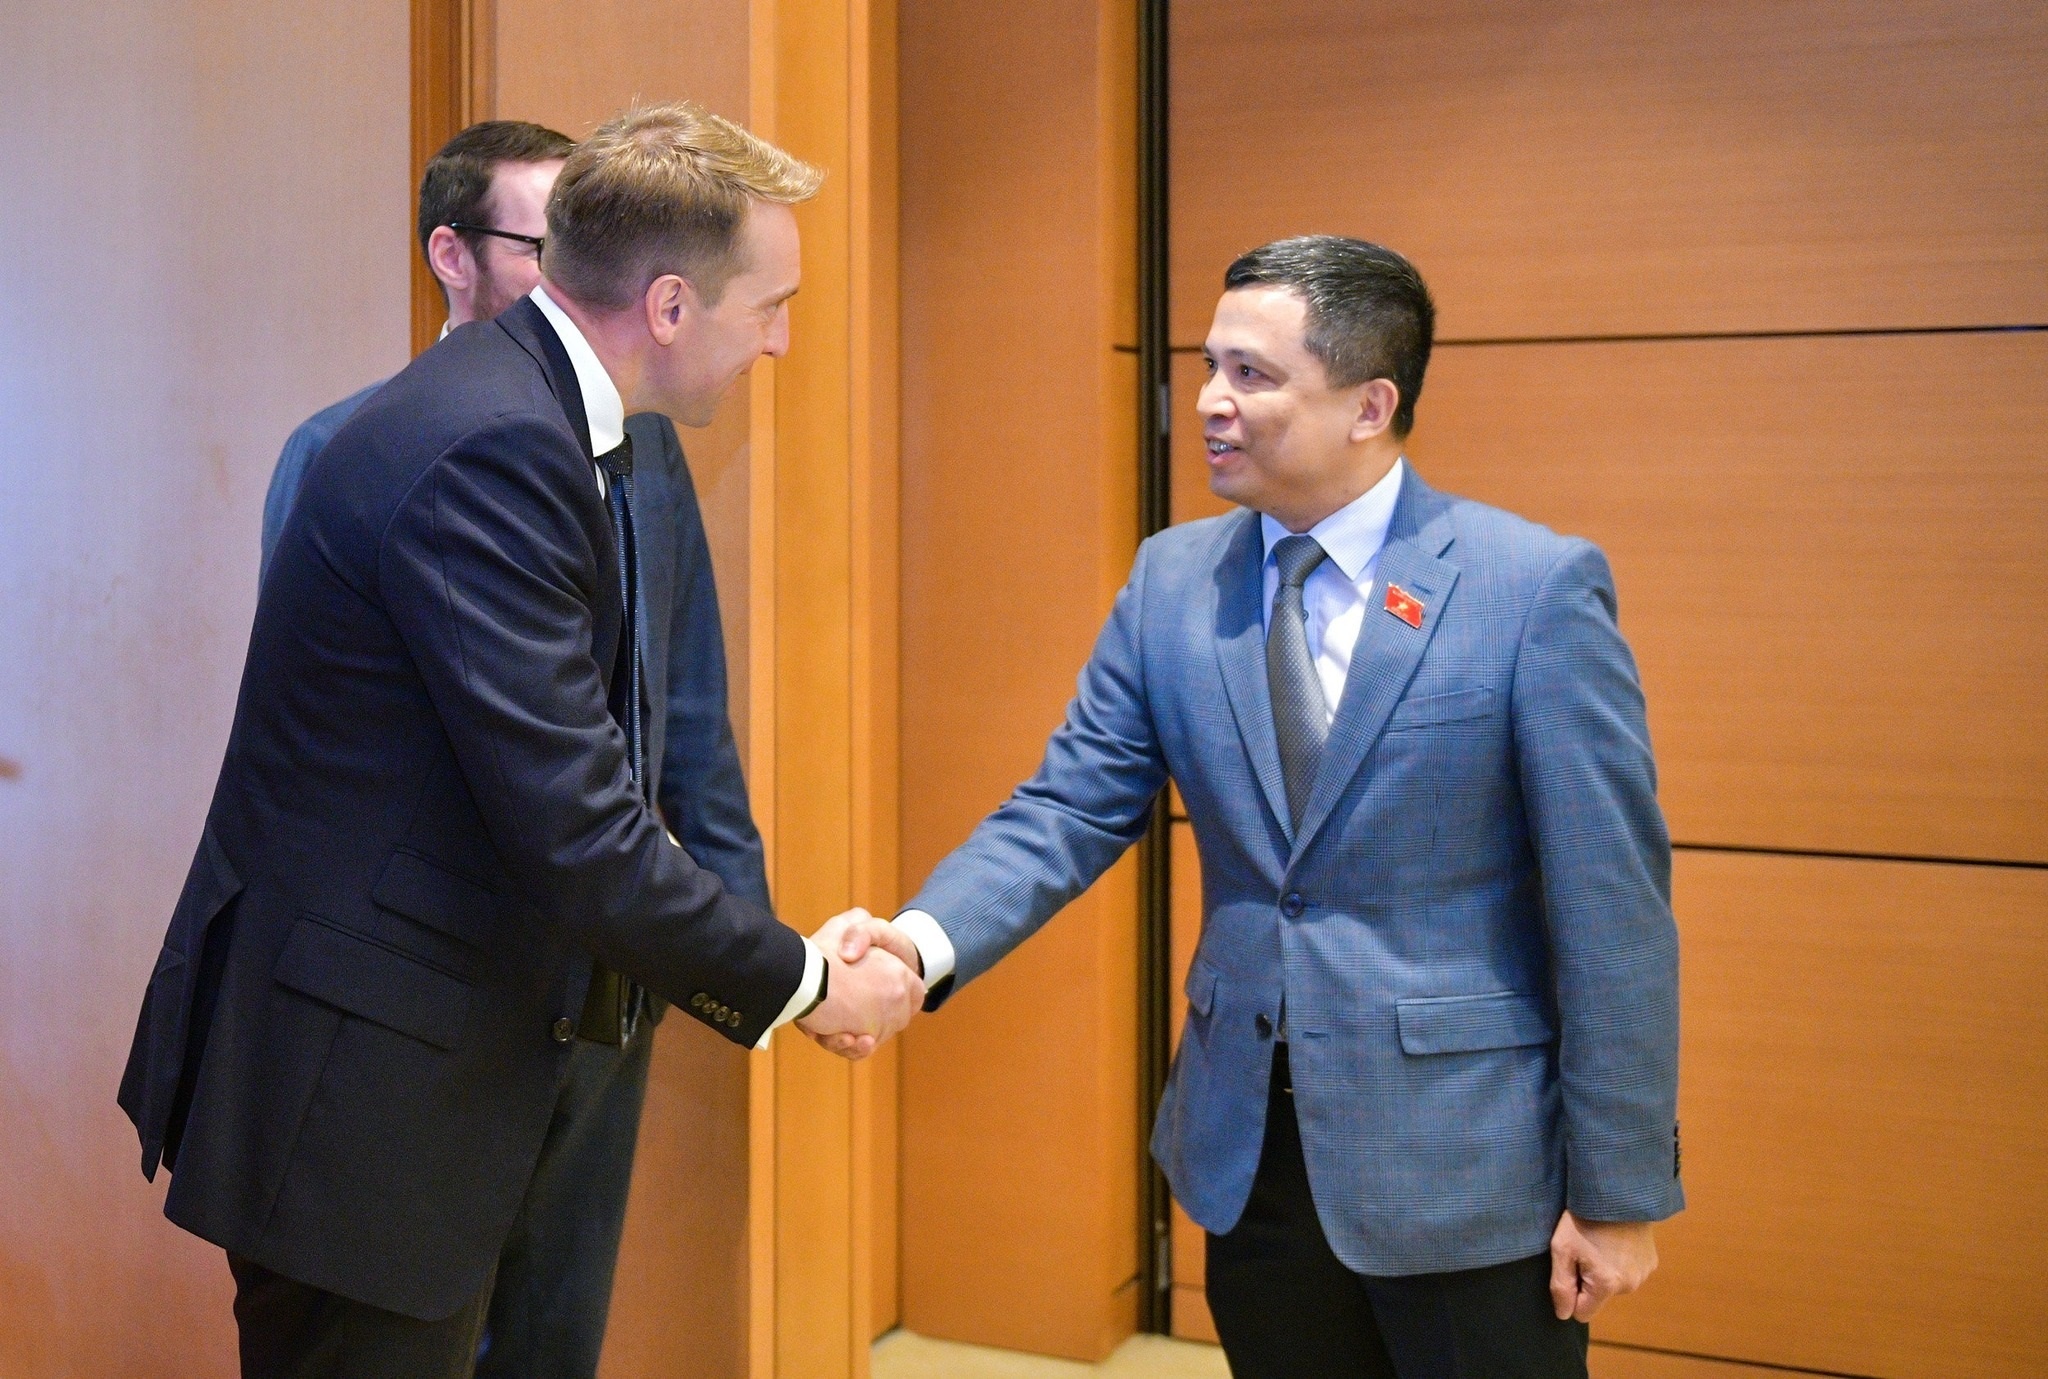 Cao ủy Martin Kent cũng đã gặp gỡ ông Phạm Phú Bình, Ủy viên Thường trực Ủy ban Đối ngoại Quốc hội Việt Nam